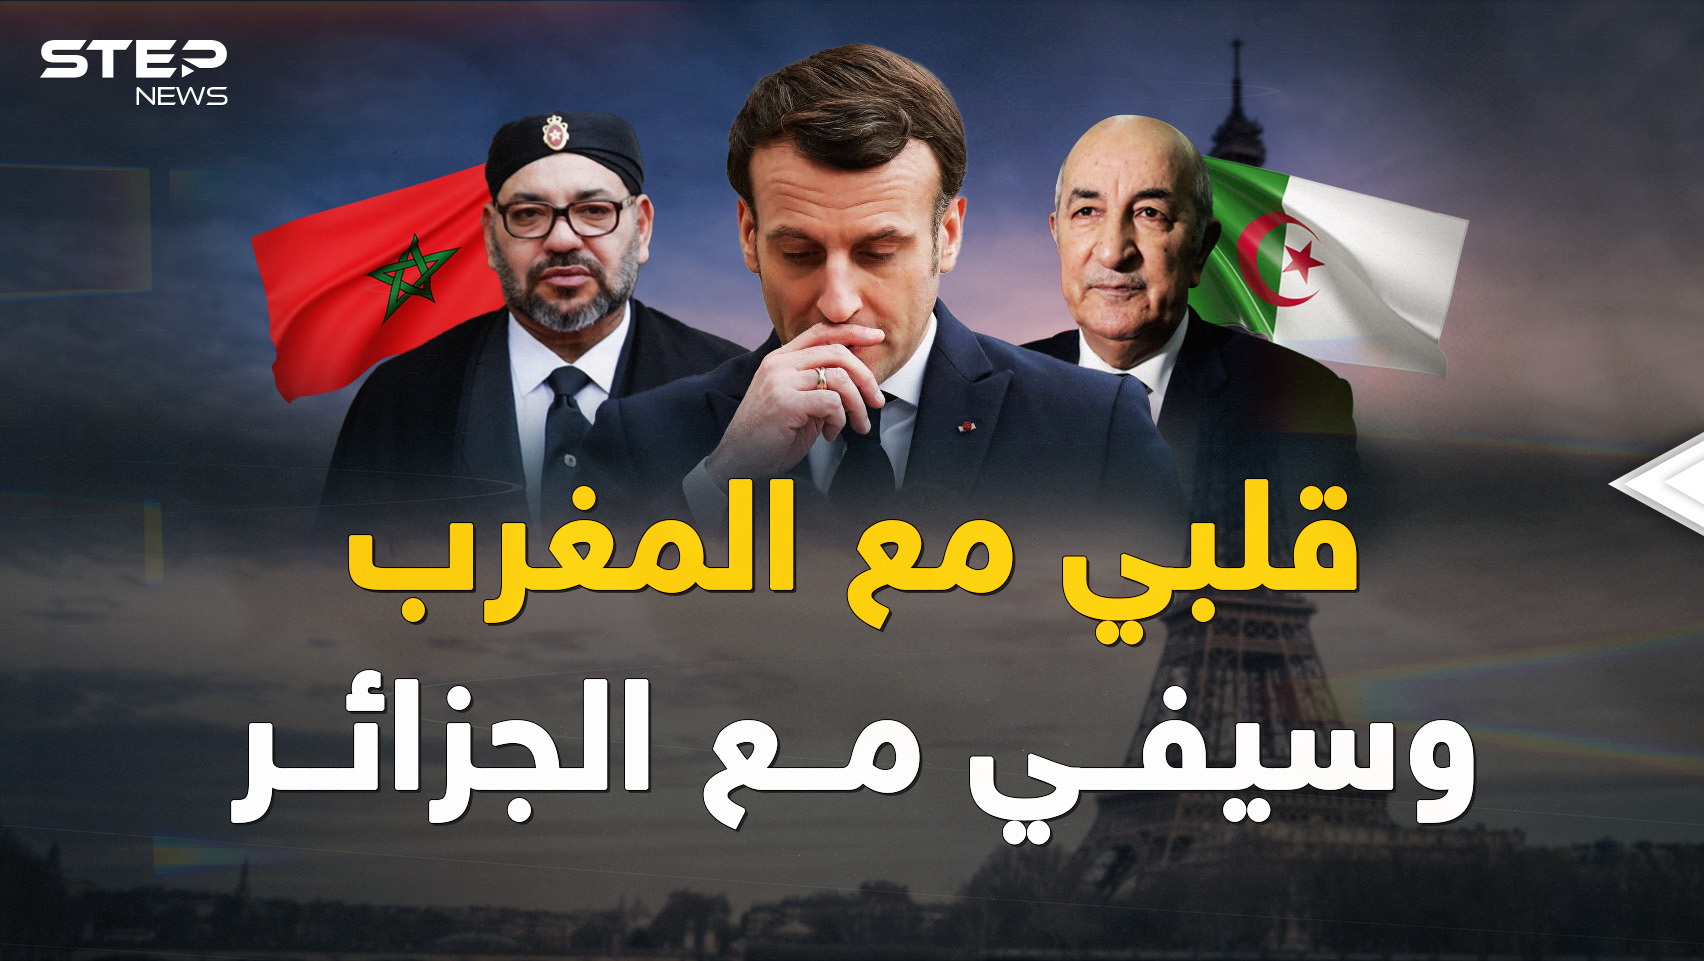 فرنسا تحب المغرب لكنها تريد الجزائر أكثر!! لماذا انقلبت باريس على الرباط لأجل "ثعلب الصحراء"؟!